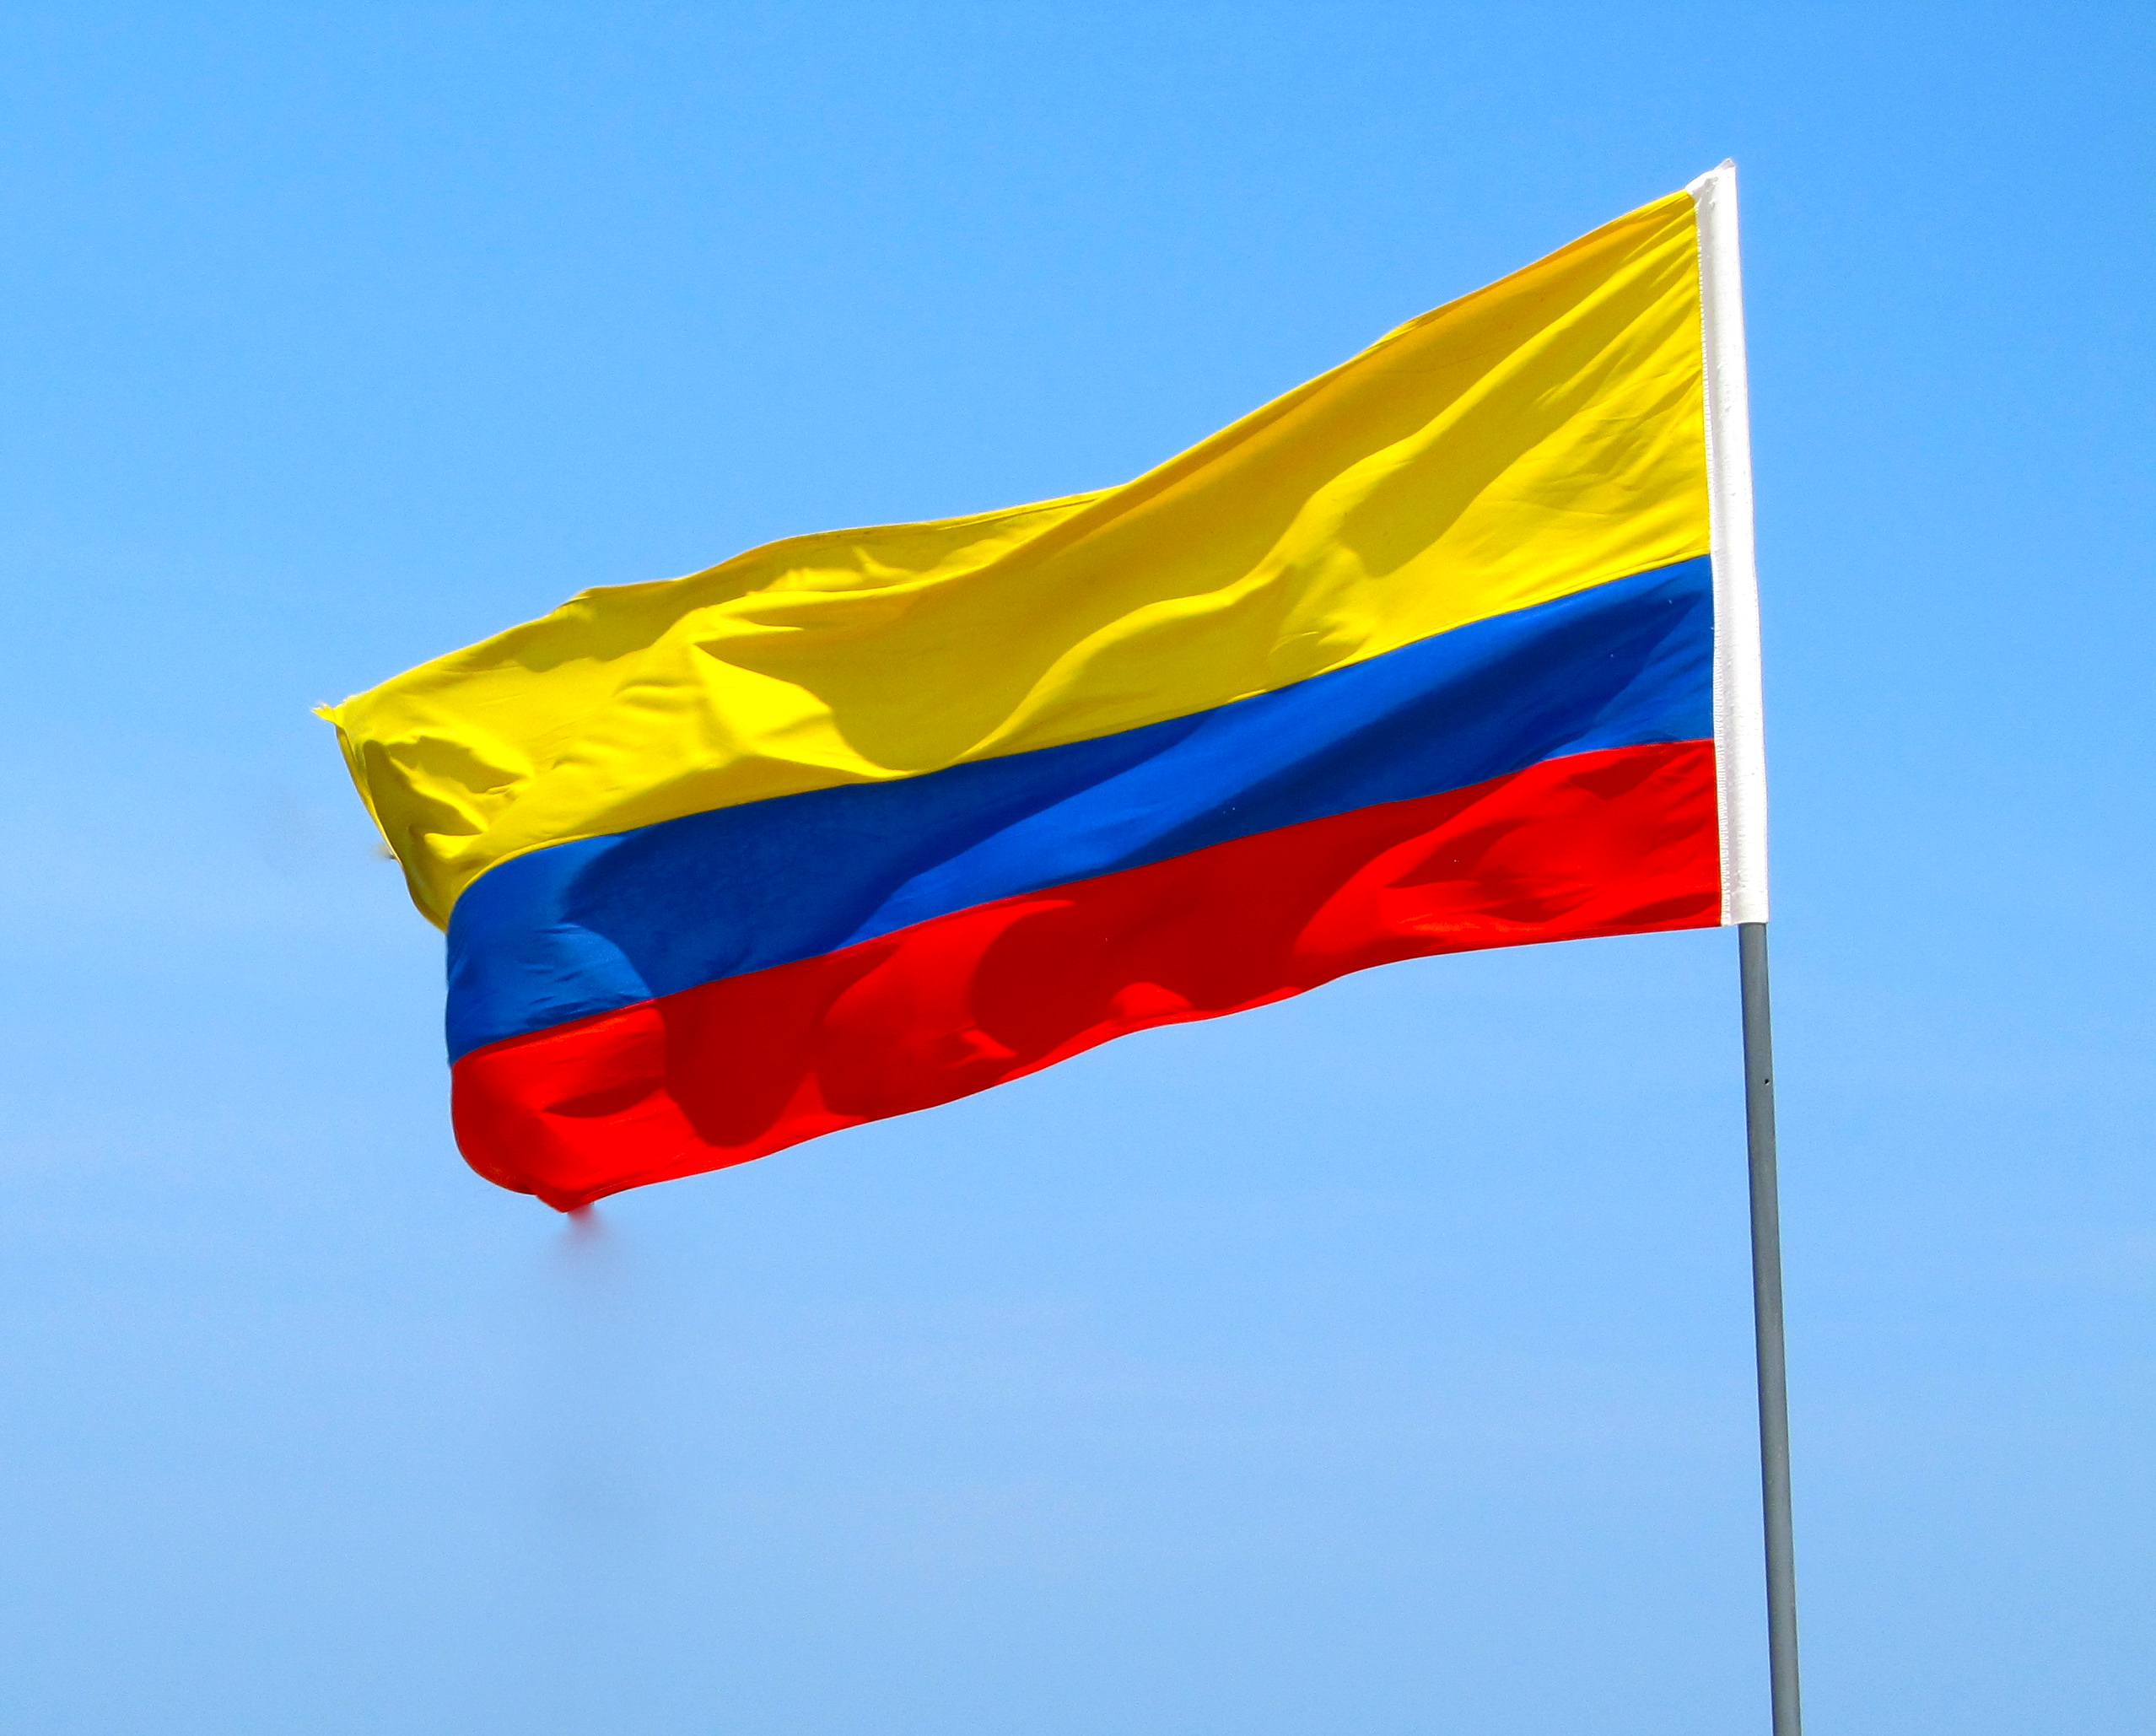 https://arquimedia.s3.amazonaws.com/63/noticias/bandera-colombia-grandejpg.jpg